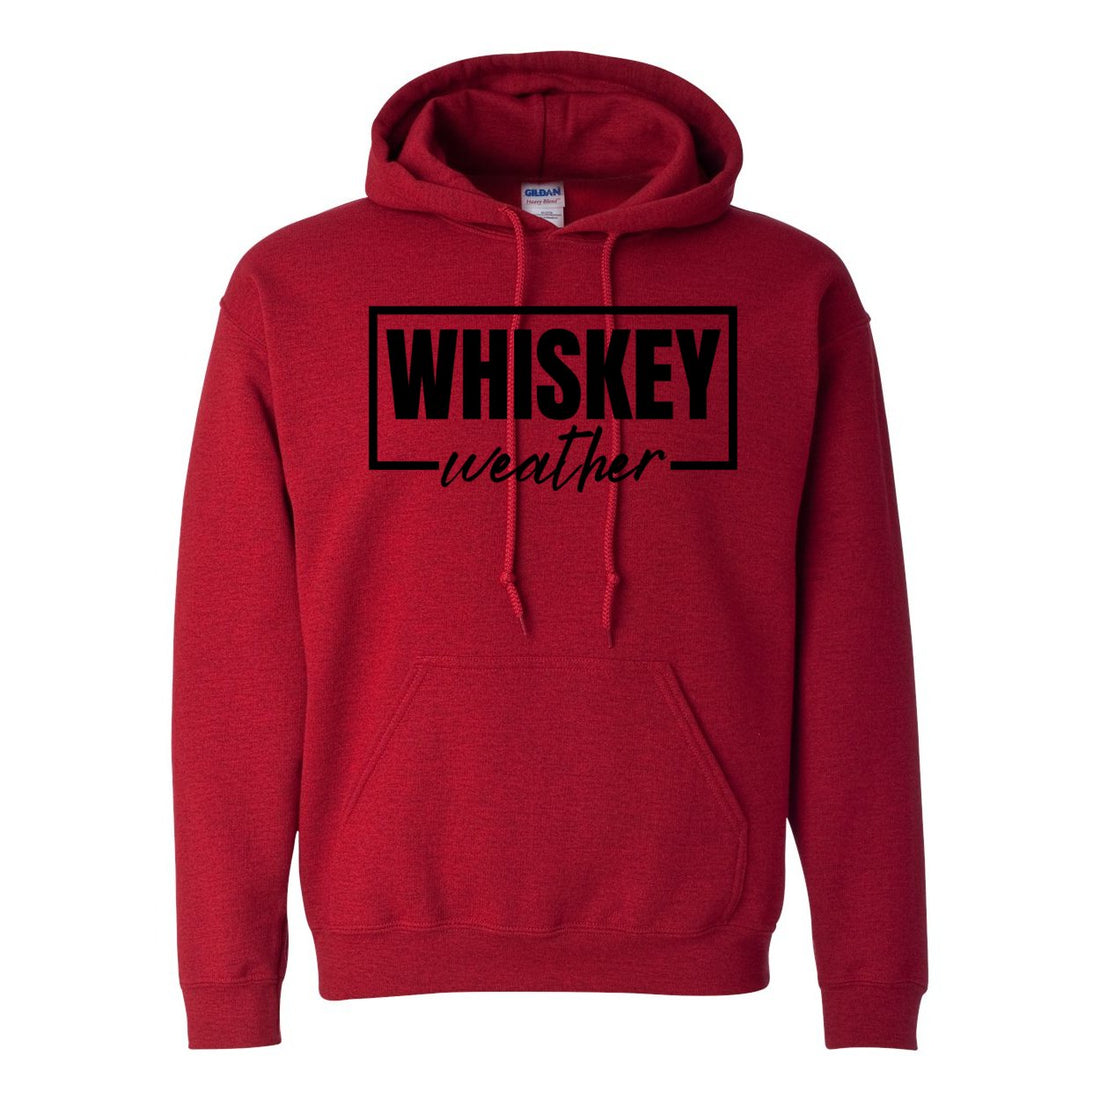 Whiskey Weather Hooded Sweatshirt - Sweaters/Hoodies - Positively Sassy - Whiskey Weather Hooded Sweatshirt